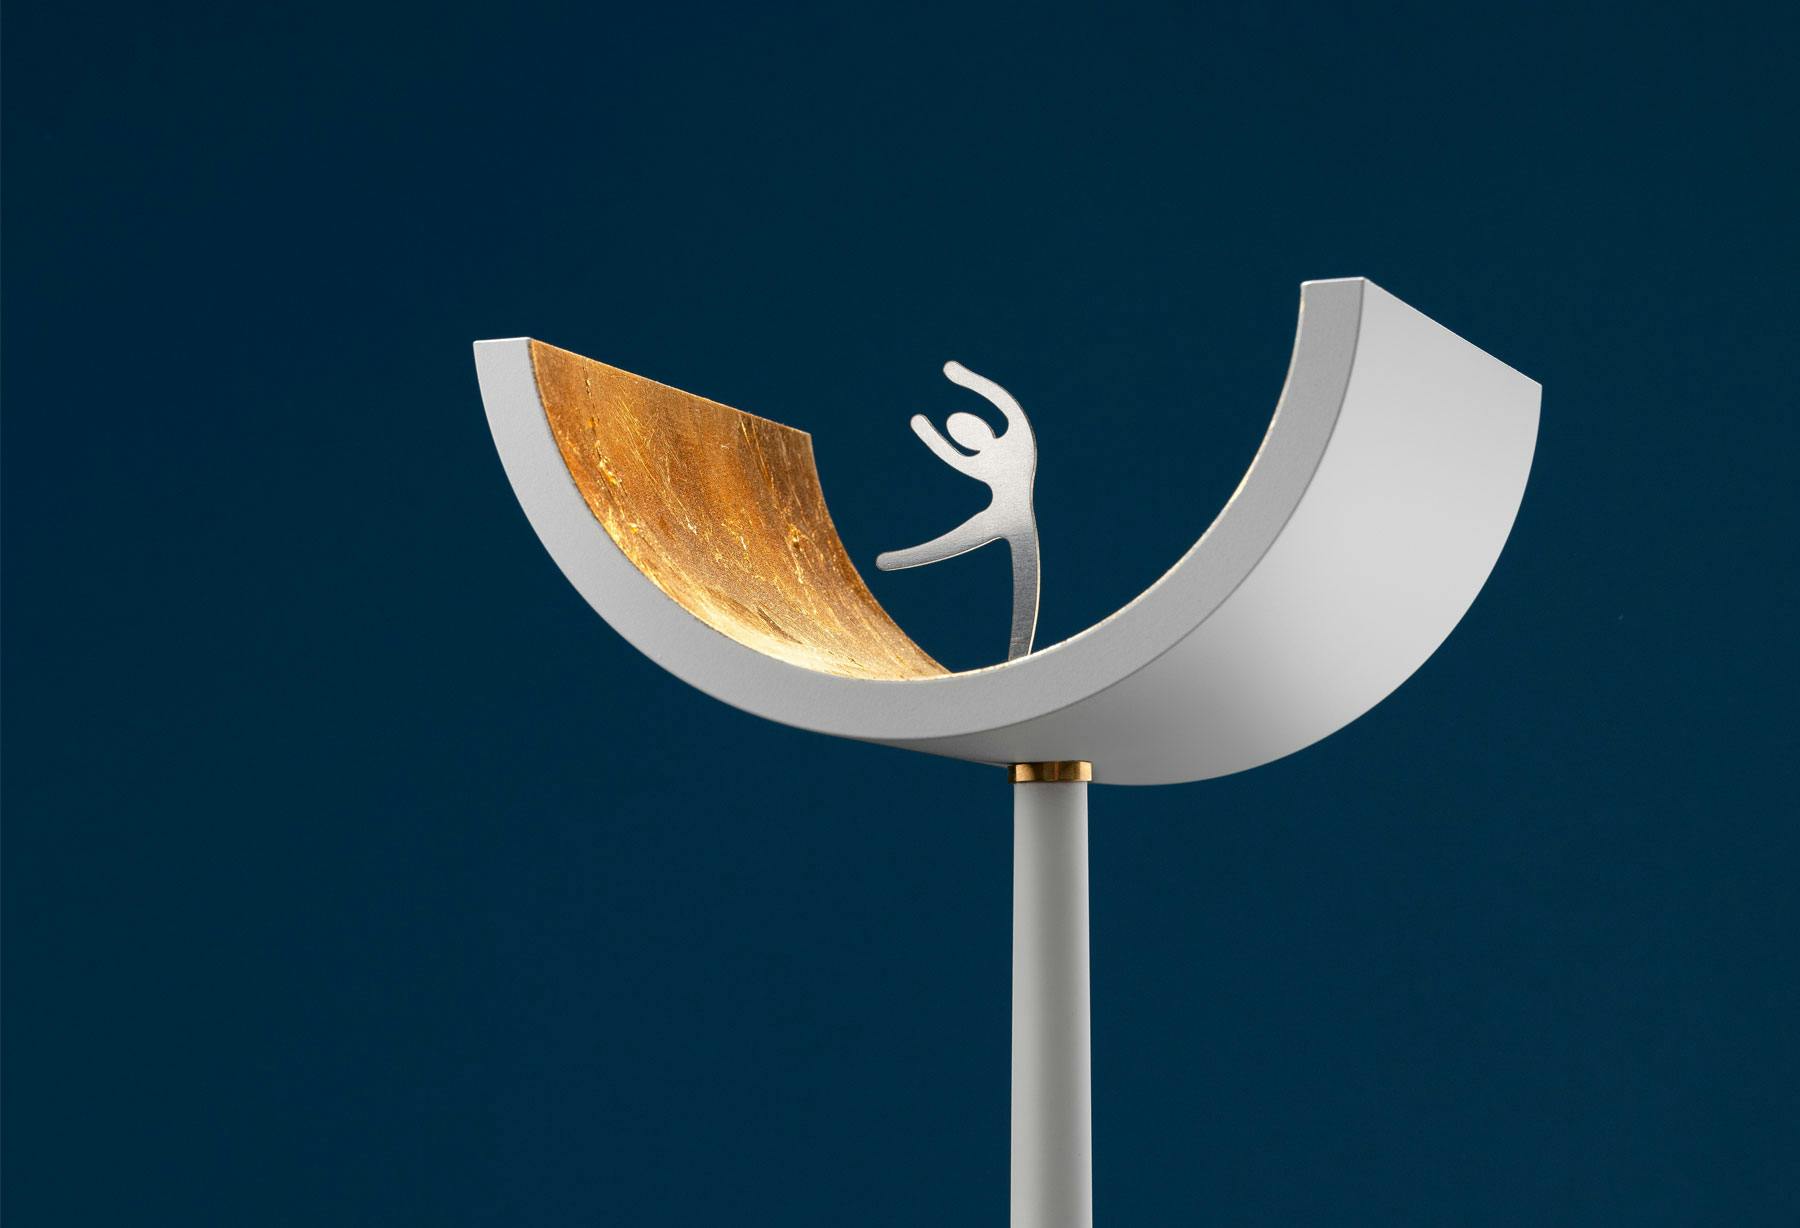 <p>Die Leuchte „U“ wurde von einem der renommiertesten internationalen Preise für herausragendes Design ausgewählt und anlässlich der „The Annual Good Design Show 2021“ in Athen ausgestellt.</p>
